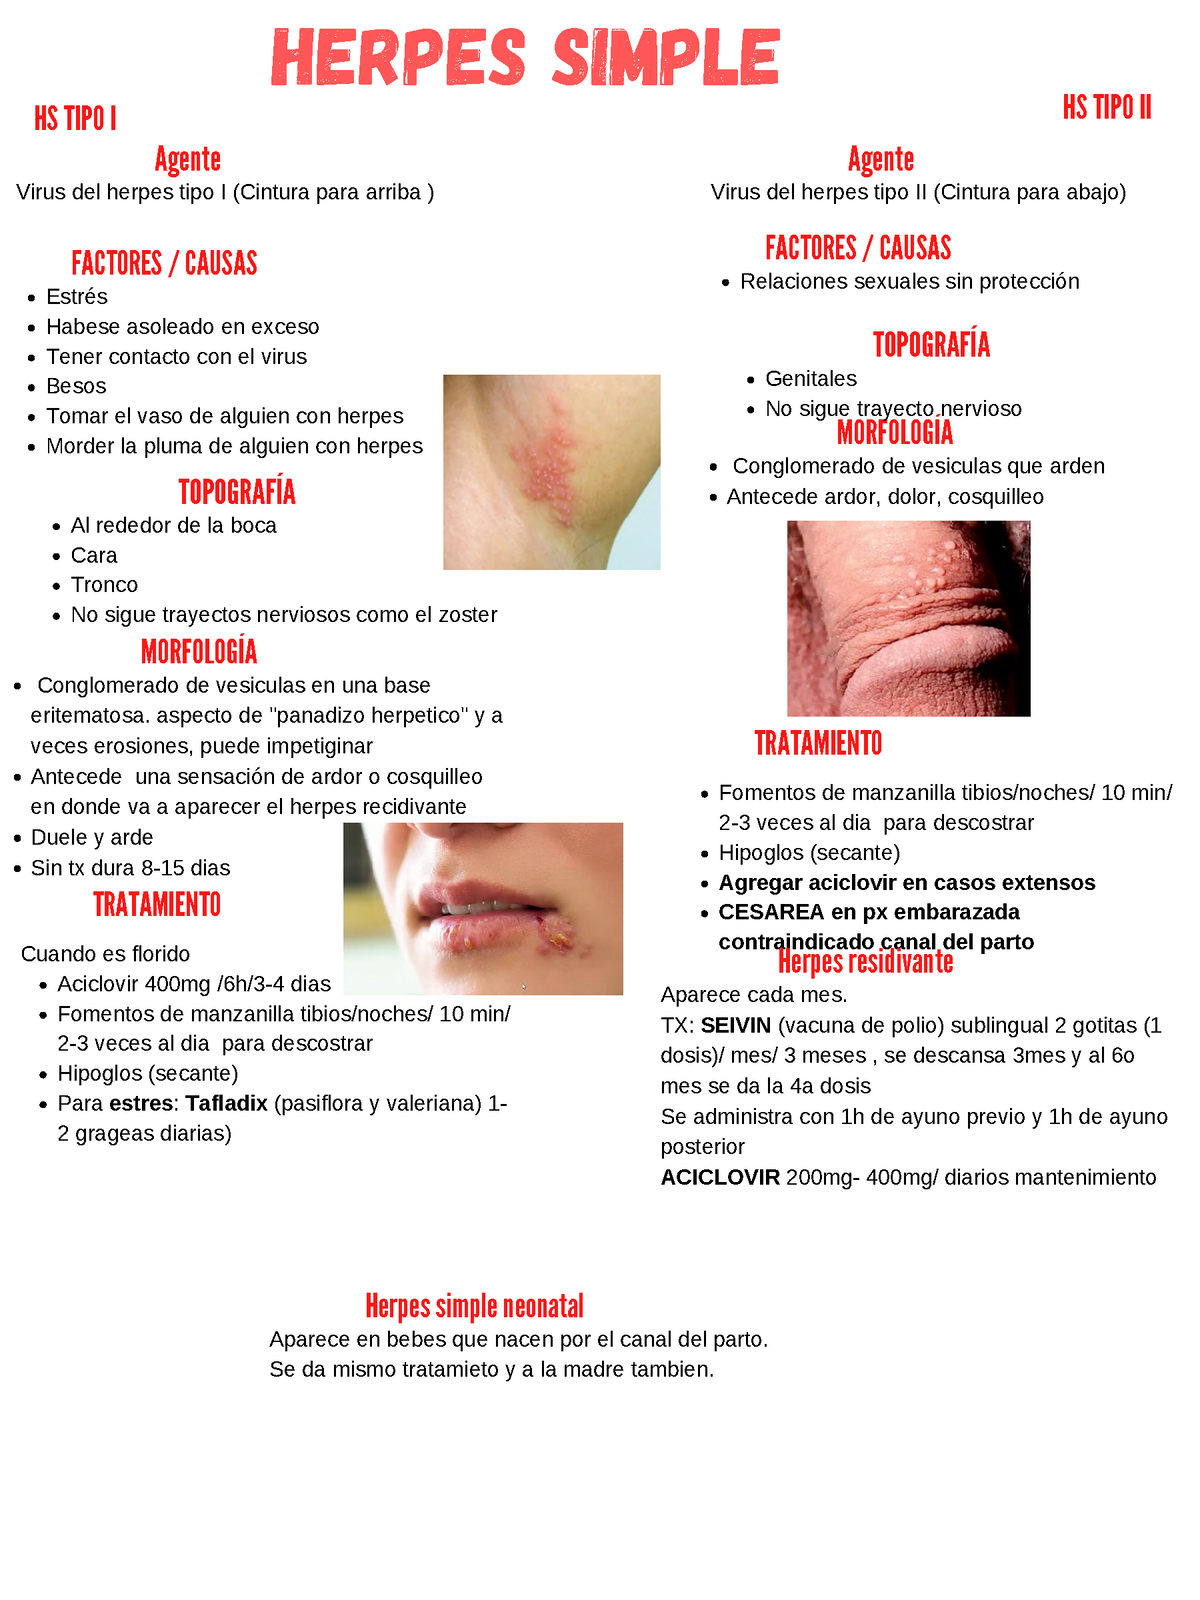 Herpes Simple - Resúmen completo con características clínicas, diagnosticas  y terapéuticas sobre - Studocu